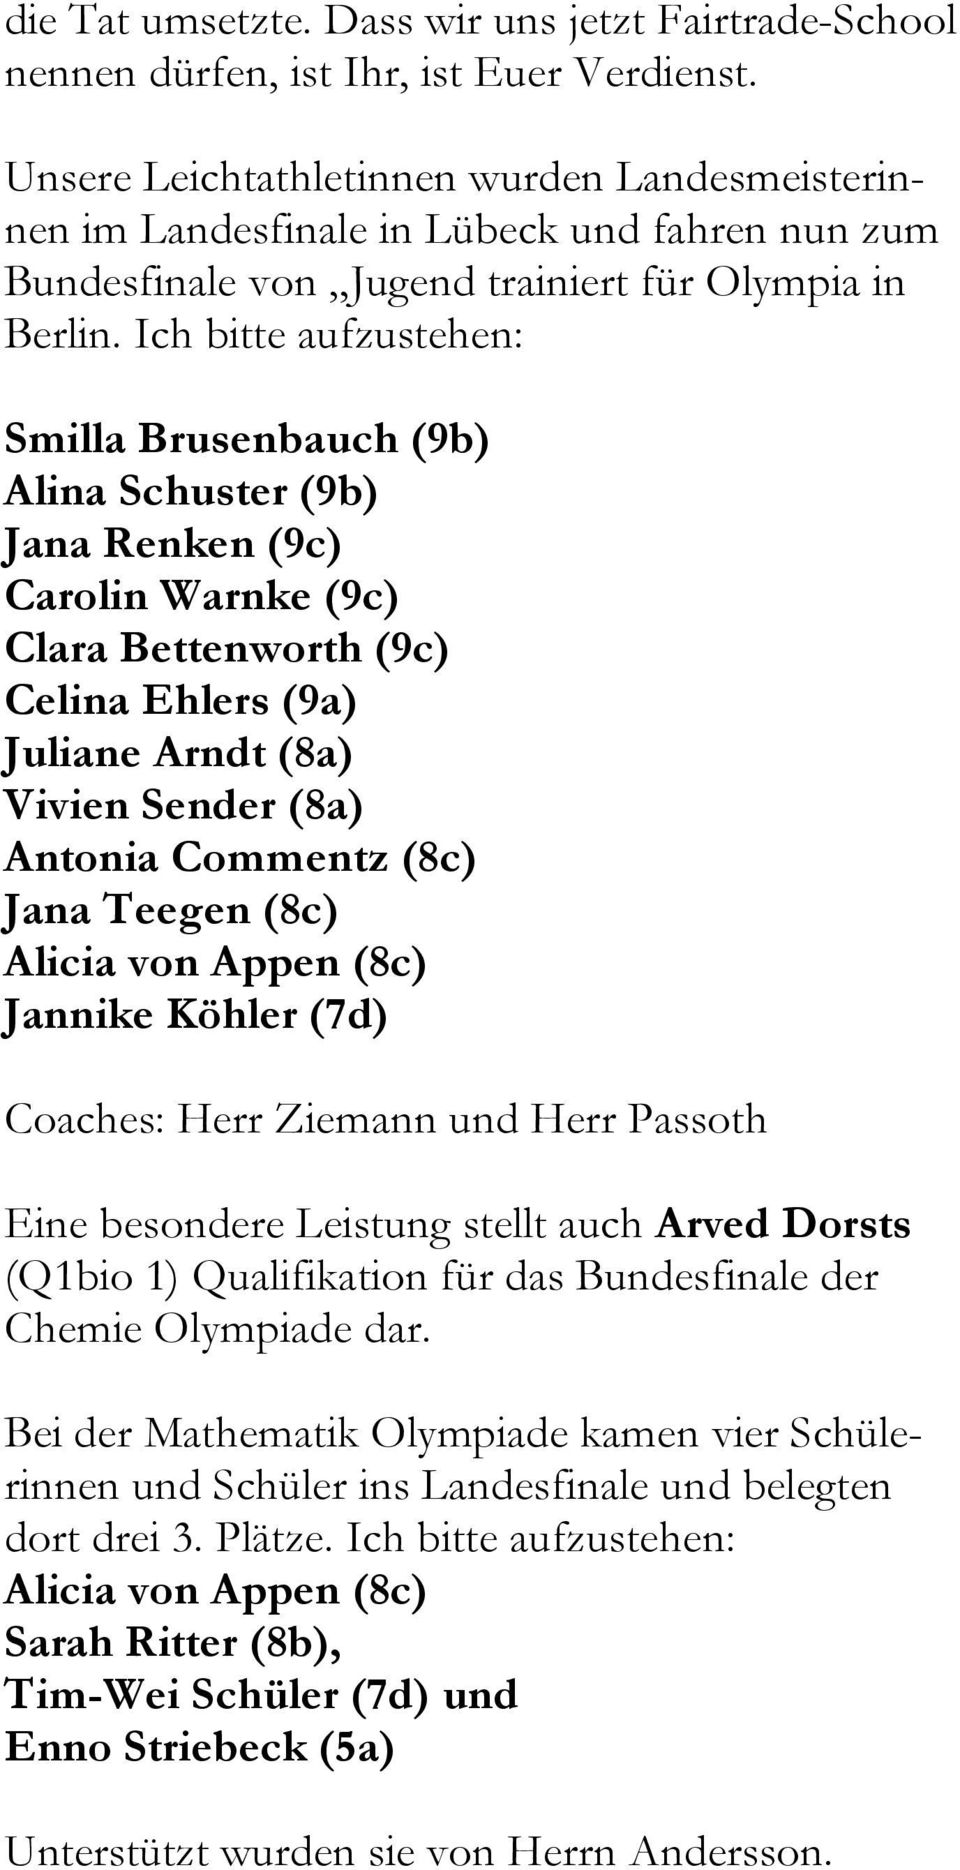 Ich bitte aufzustehen: Smilla Brusenbauch (9b) Alina Schuster (9b) Jana Renken (9c) Carolin Warnke (9c) Clara Bettenworth (9c) Celina Ehlers (9a) Juliane Arndt (8a) Vivien Sender (8a) Antonia